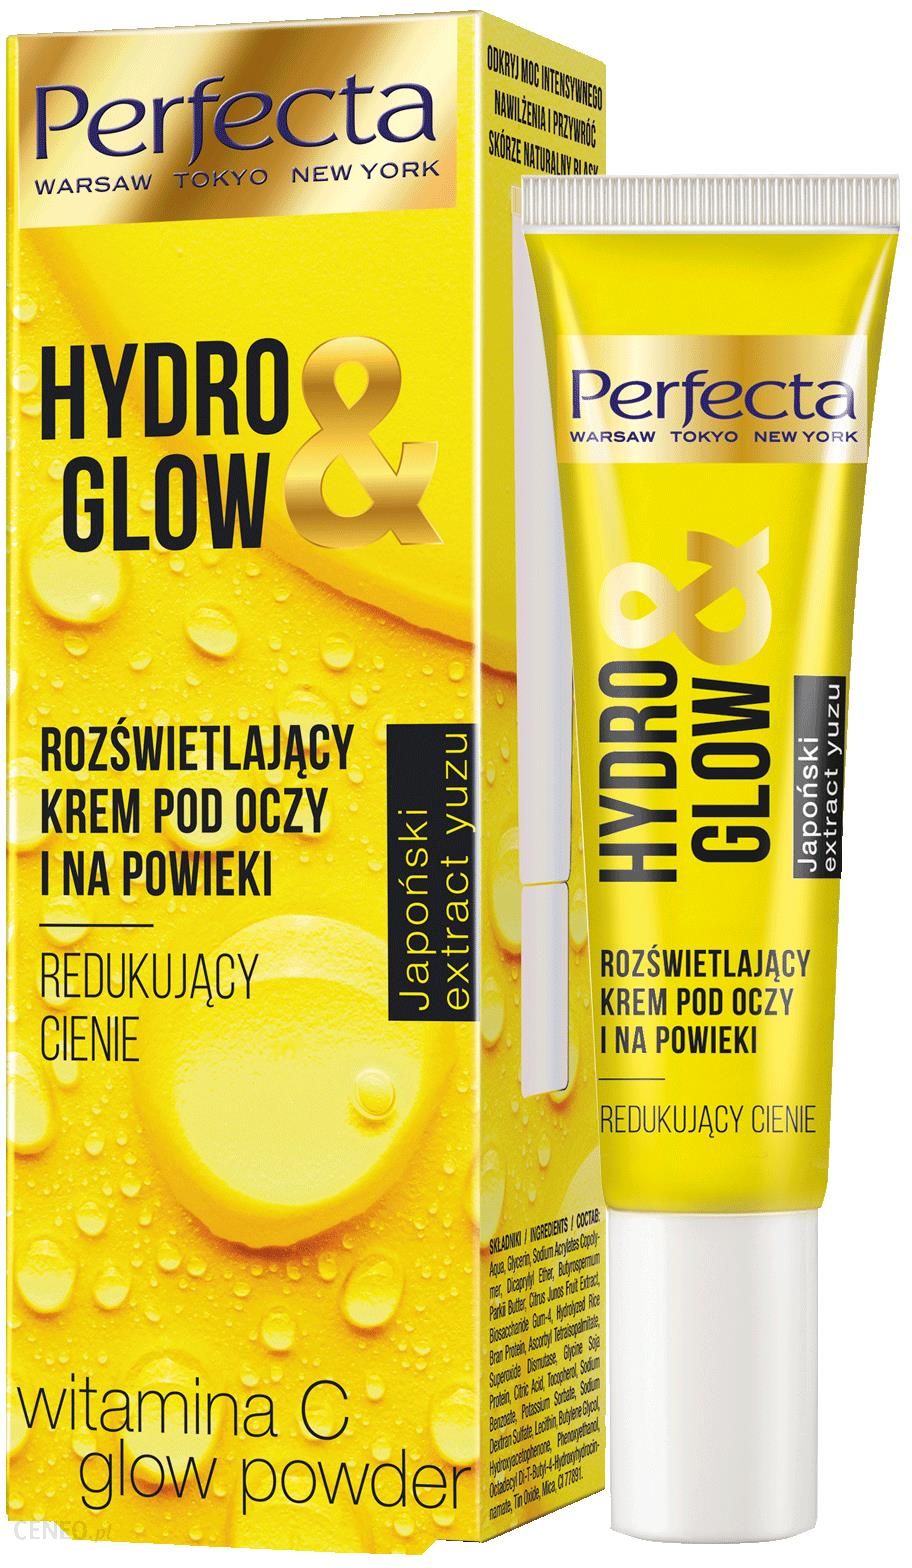 Perfecta Hydro&Glow Rozświetlający krem pod oczy i na powieki redukujący cienie 50ml